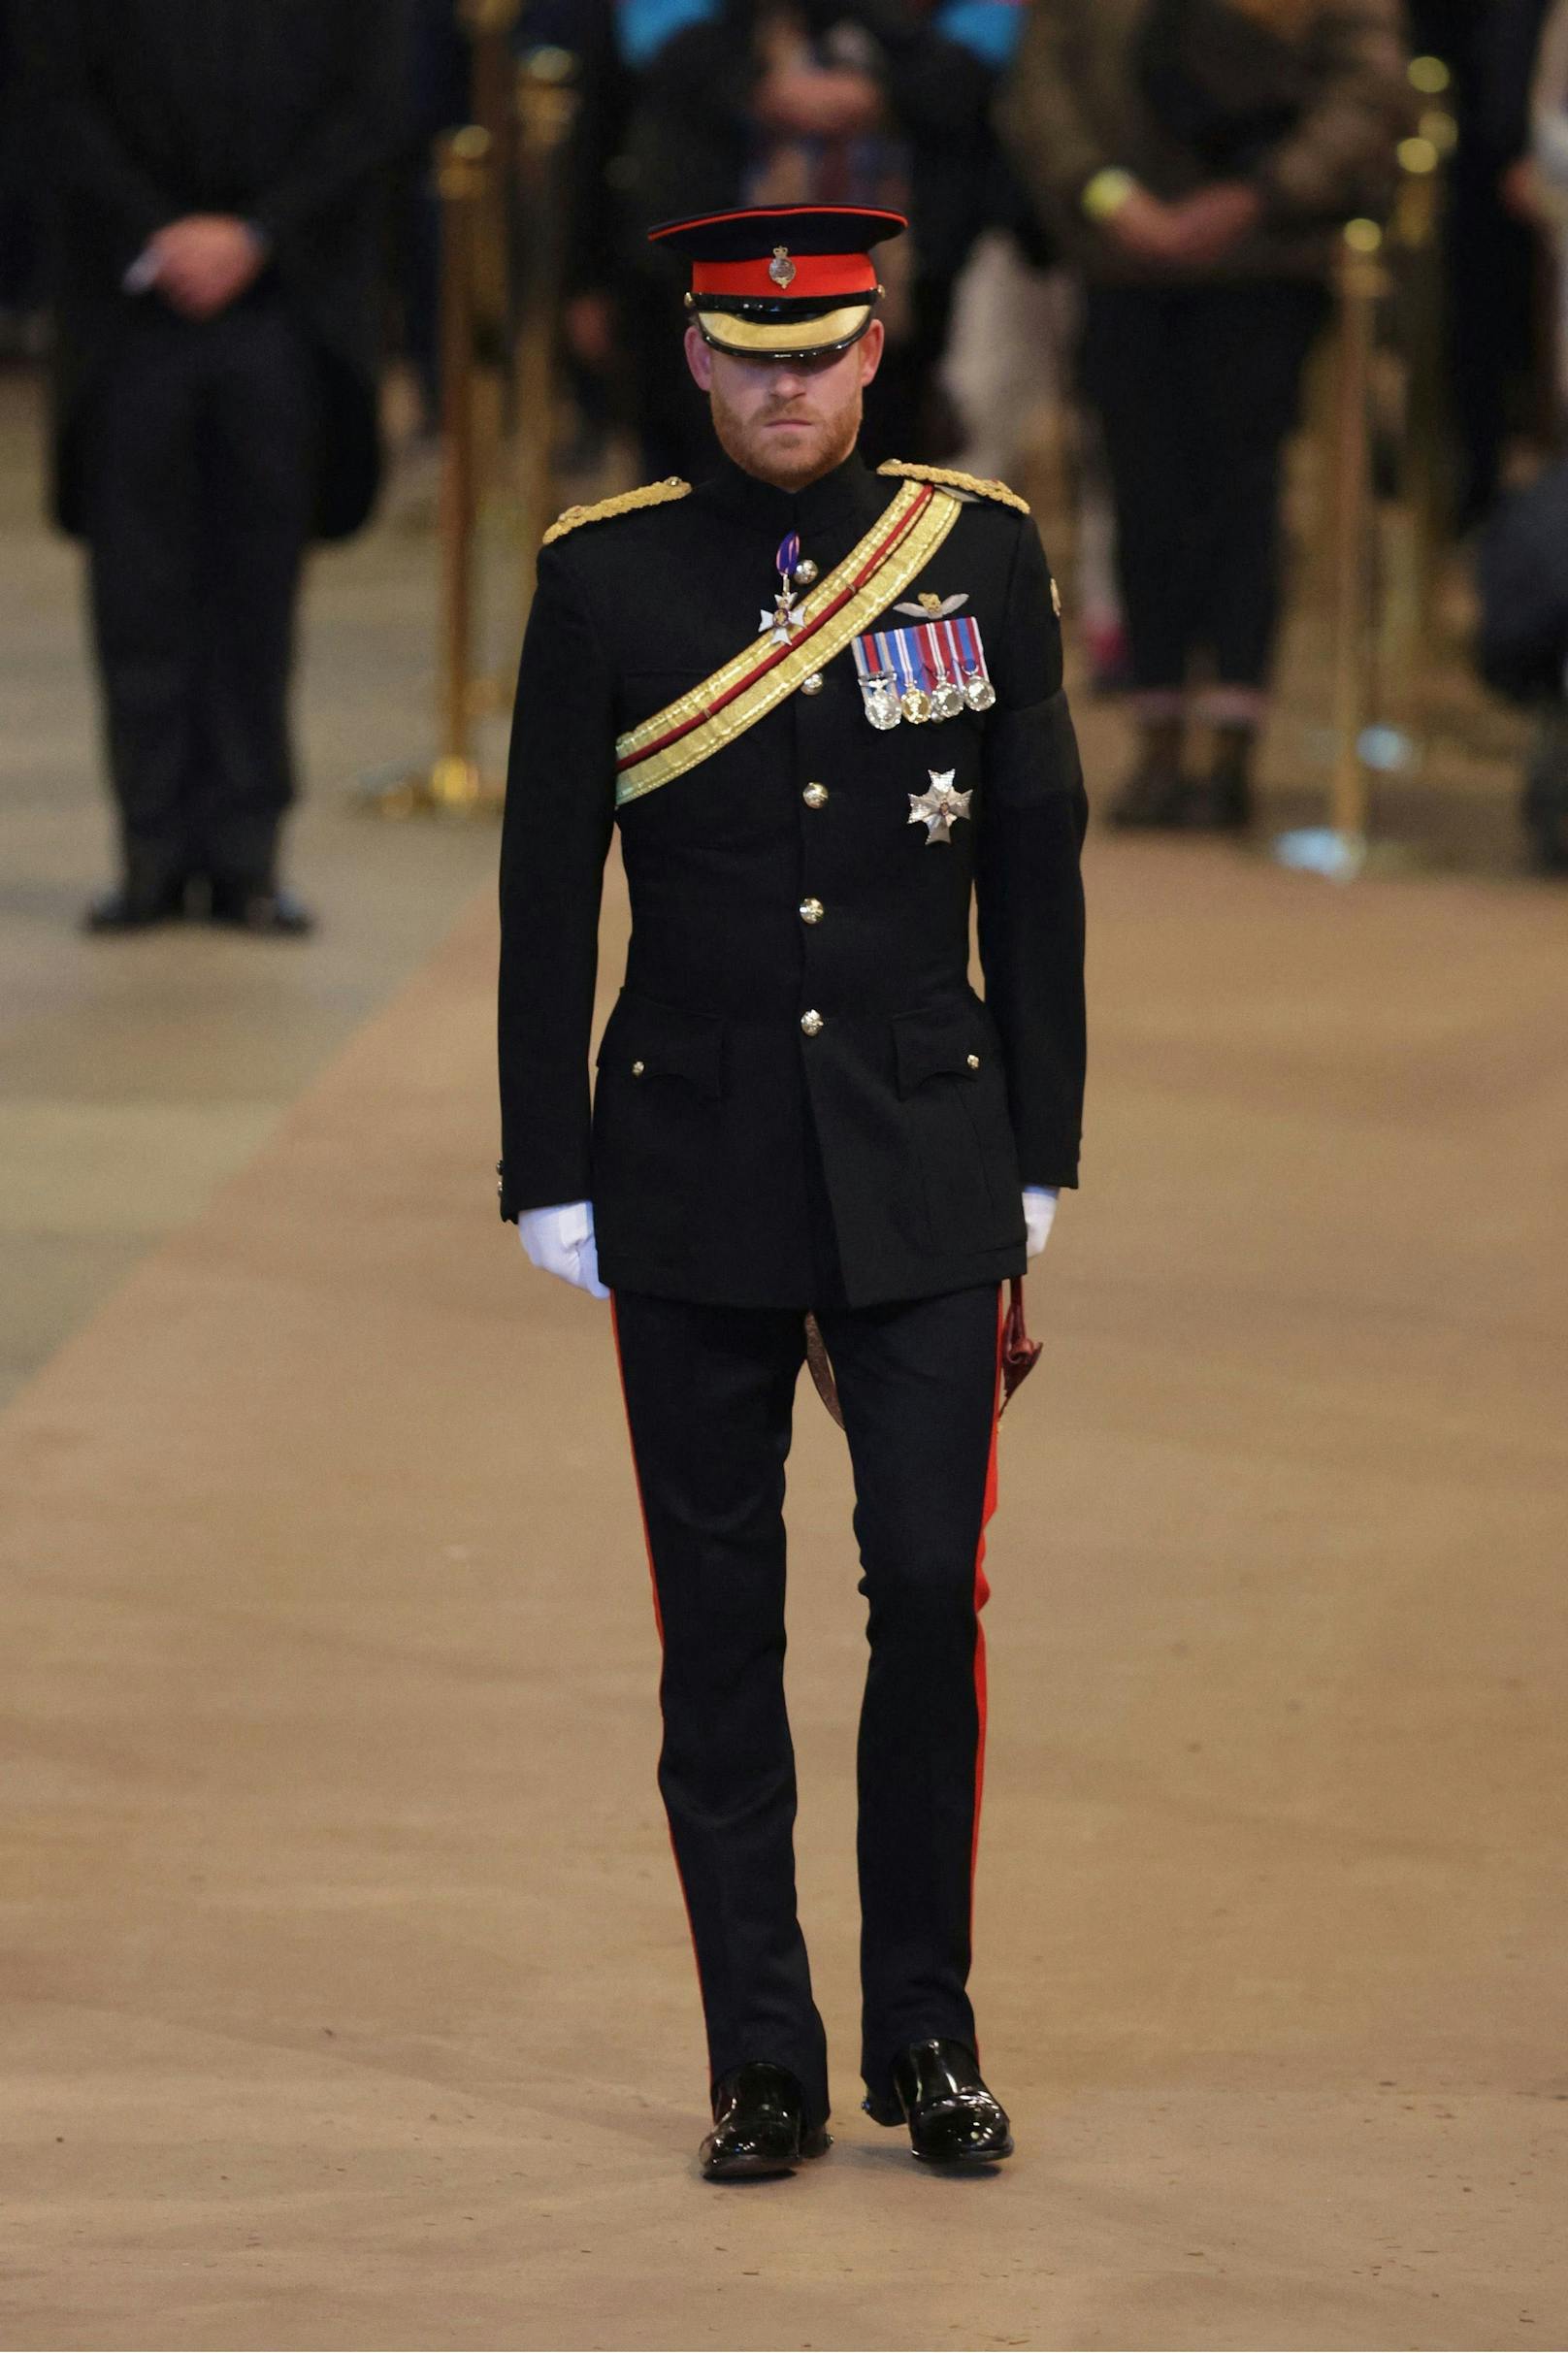 Harry "am Boden zerstört" – Uniform-Panne des Prinzen